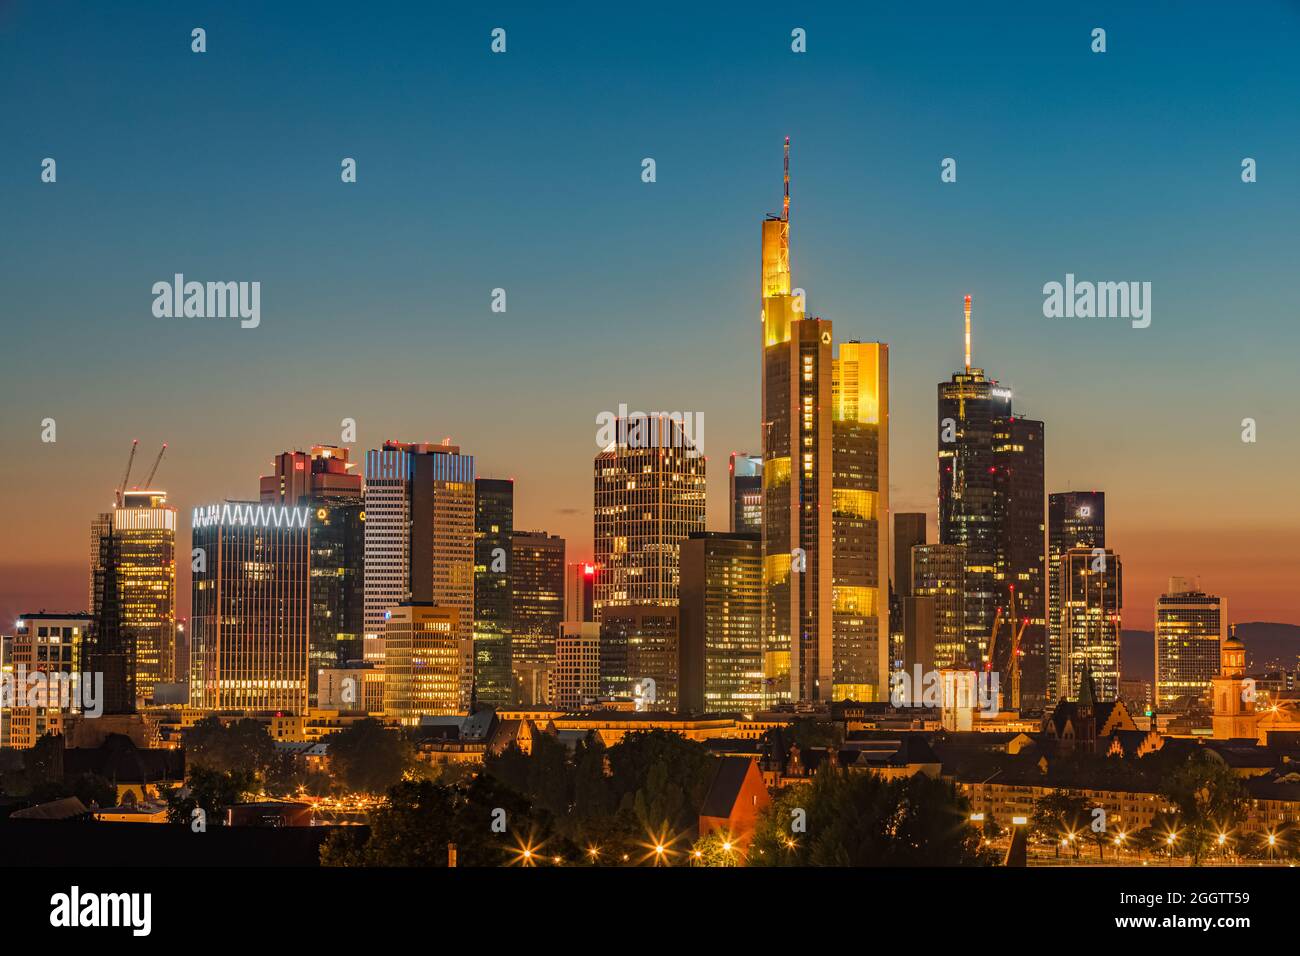 Sonnenuntergang über Frankfurts Mainhattan, dem zentralen Geschäftsviertel von Frankfurt in Deutschland. Das Wort ist ein Portmanteau von Main, dem Fluss, auf dem Frankf Stockfoto